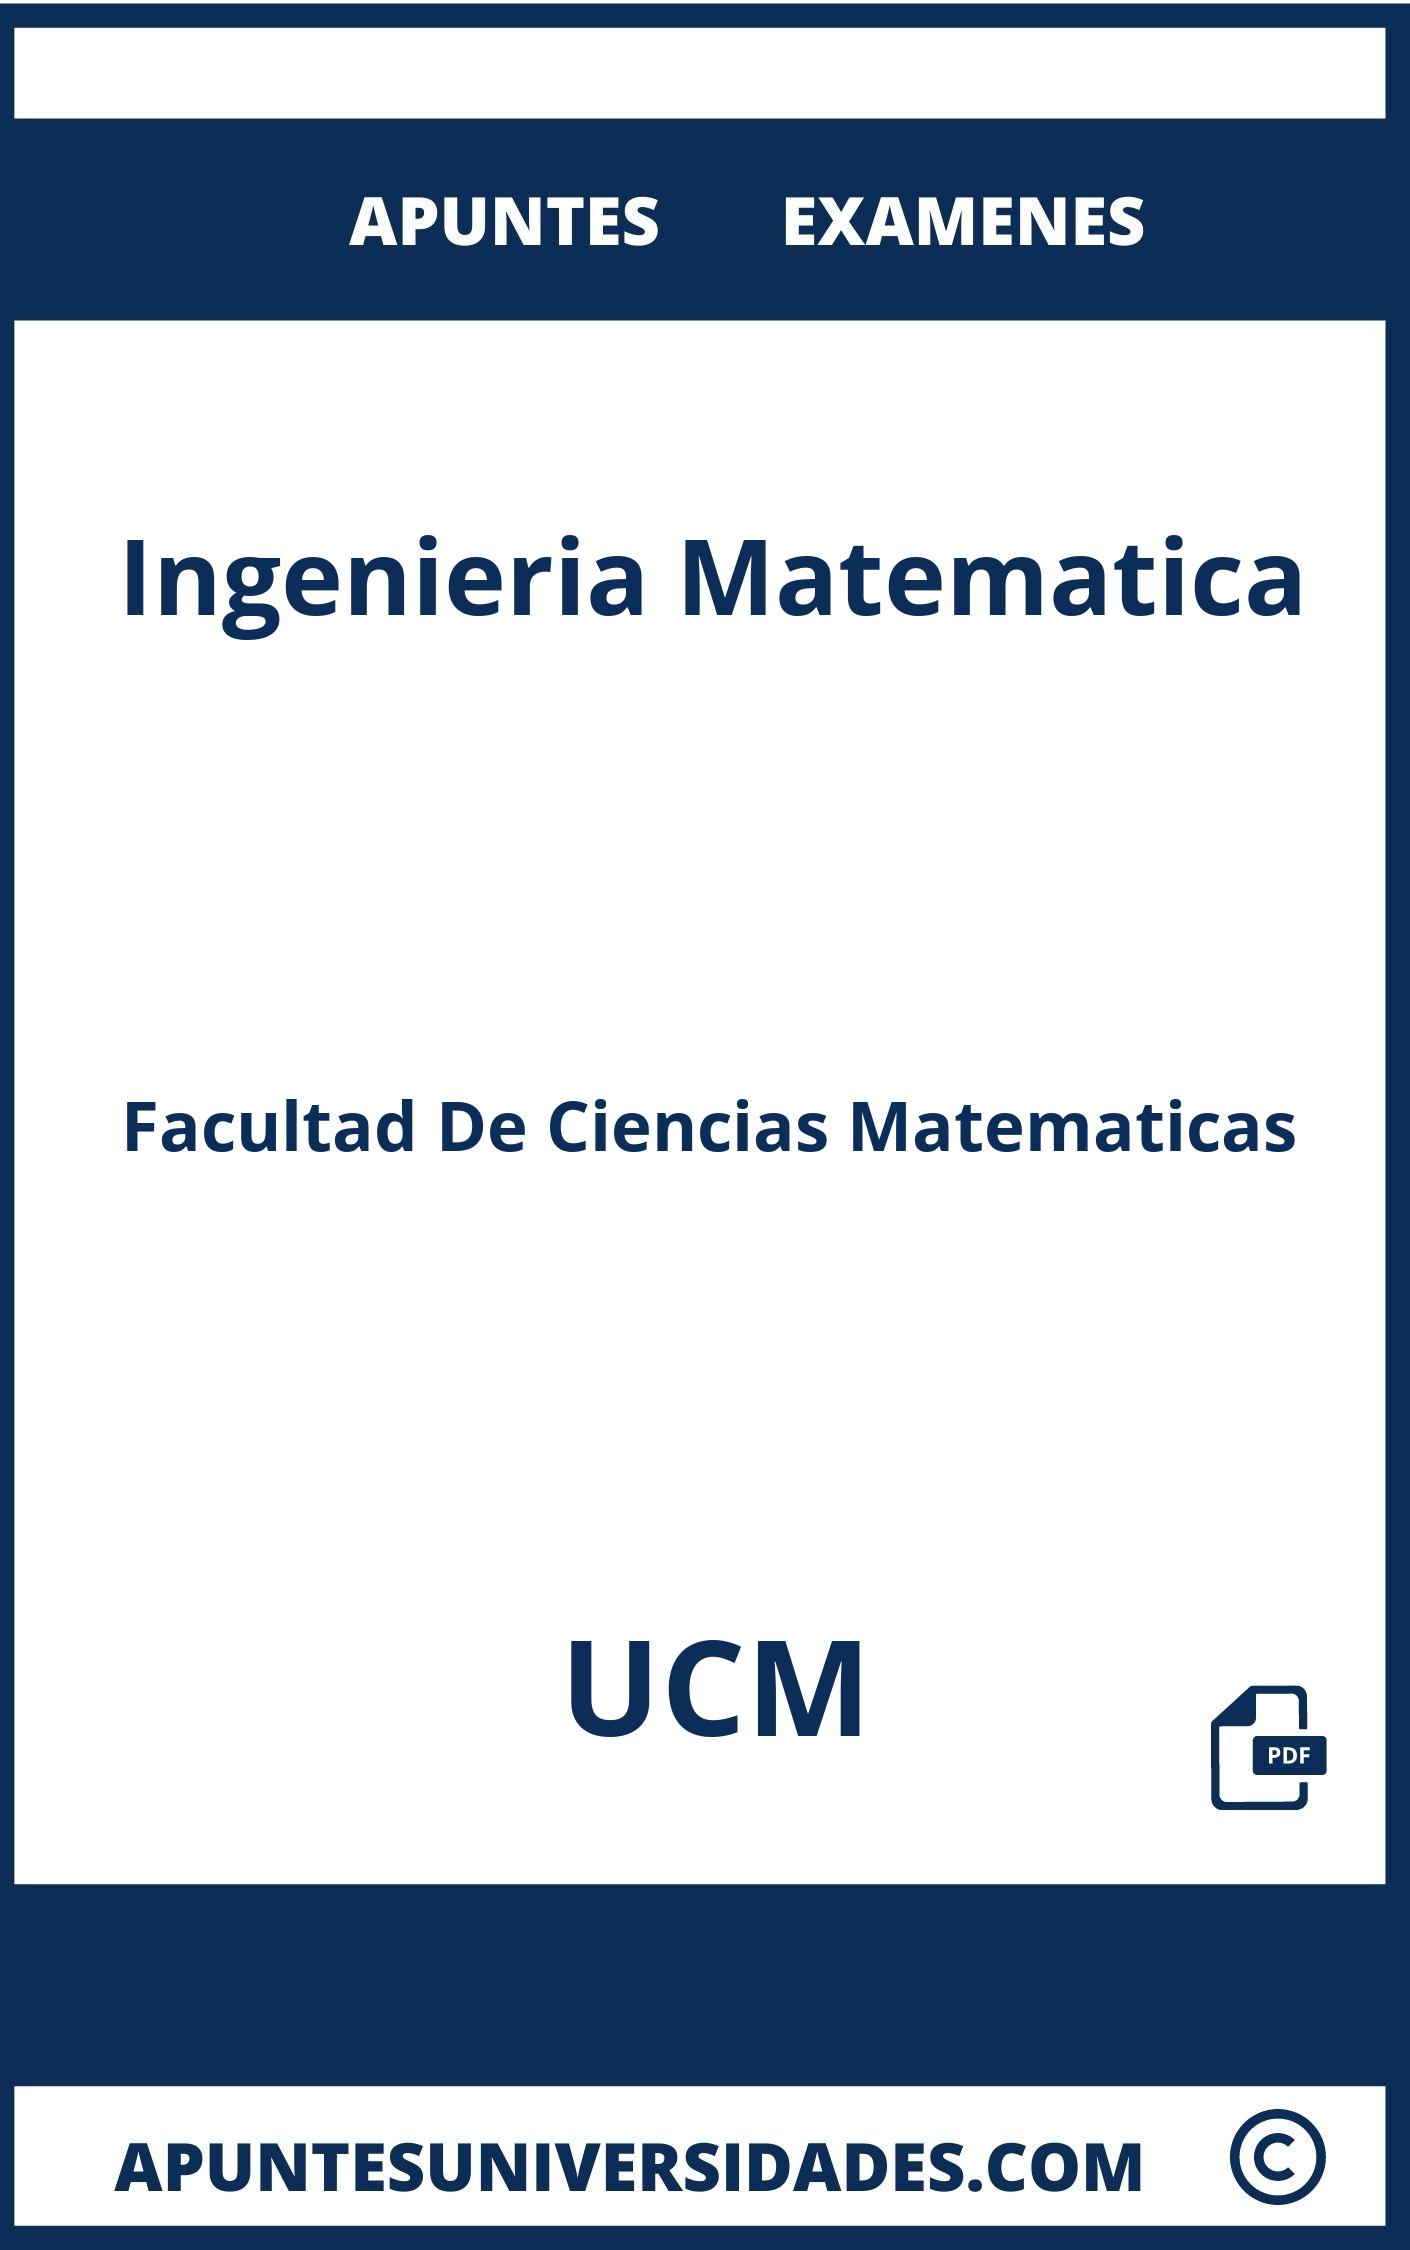 Apuntes Examenes Ingenieria Matematica UCM